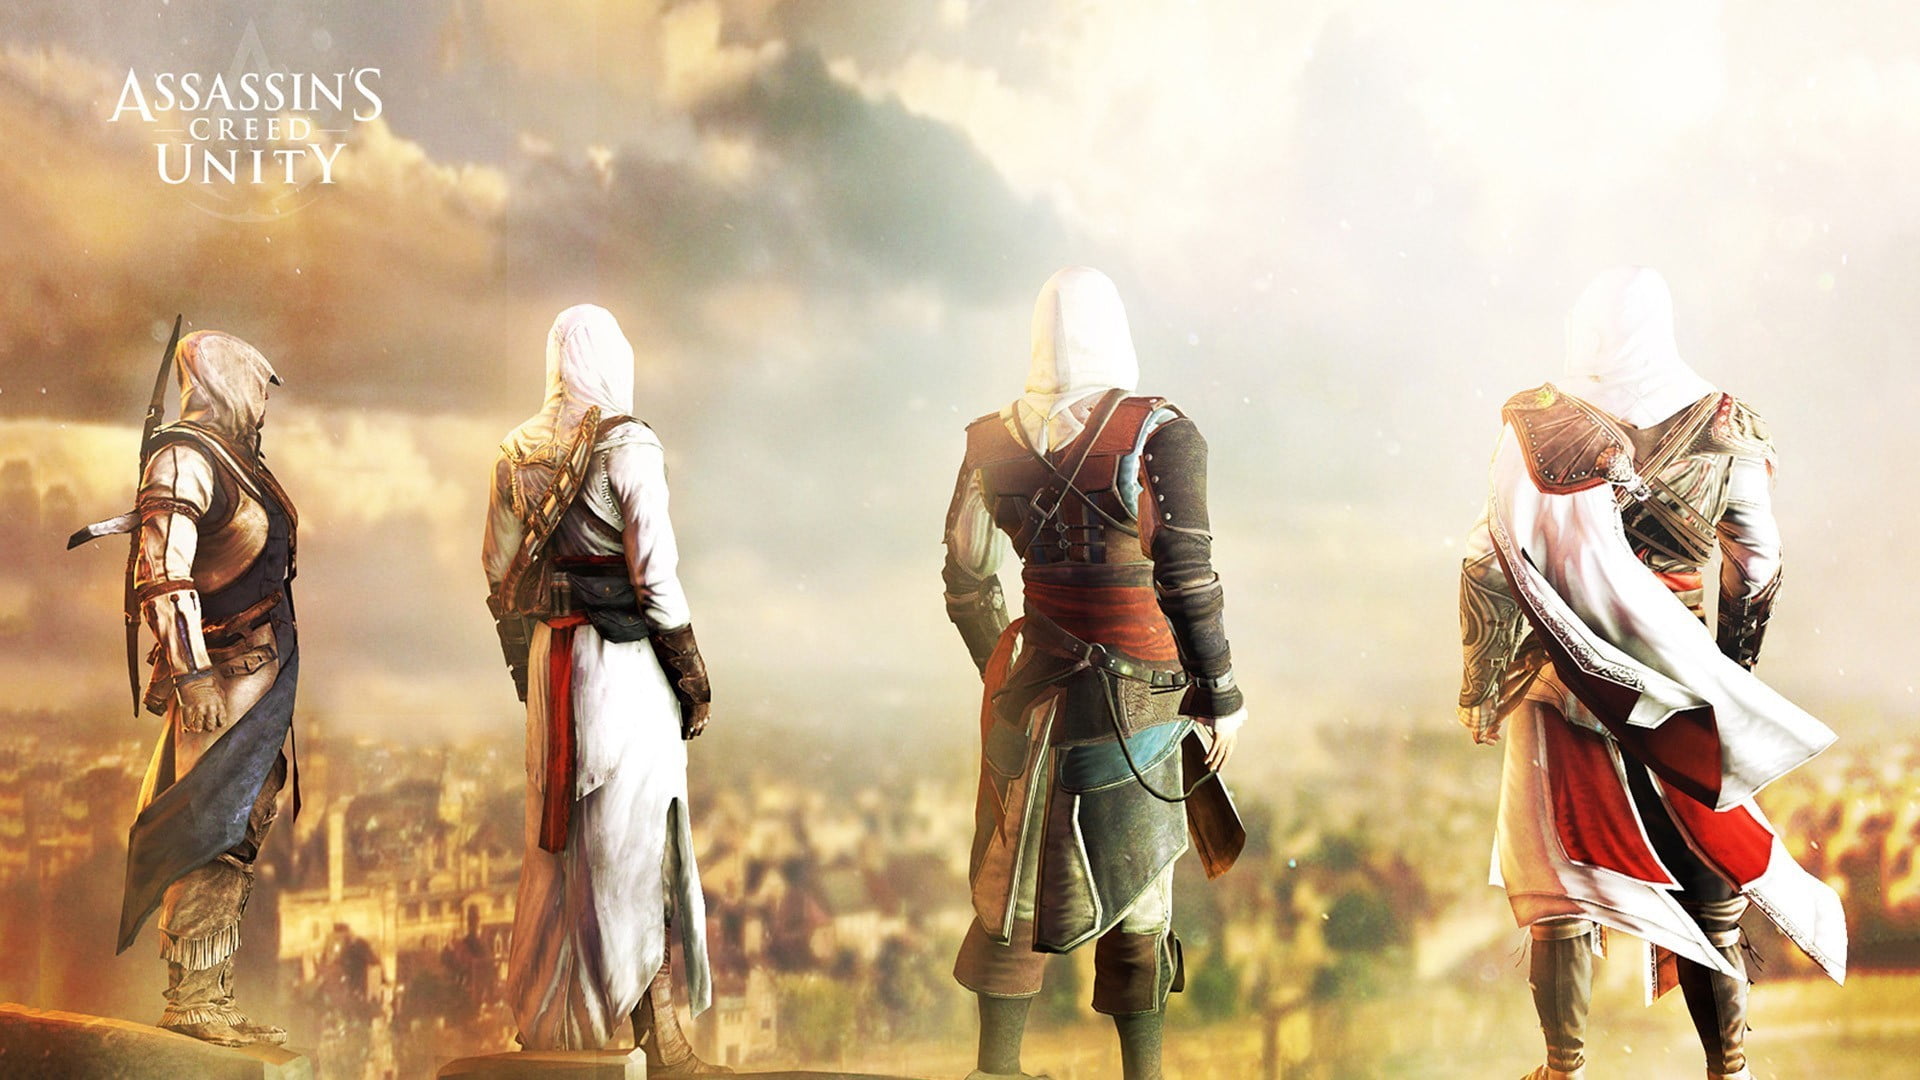 video games, Assassin's Creed, Altaïr Ibn-La'Ahad, Ezio Auditore da Firenze